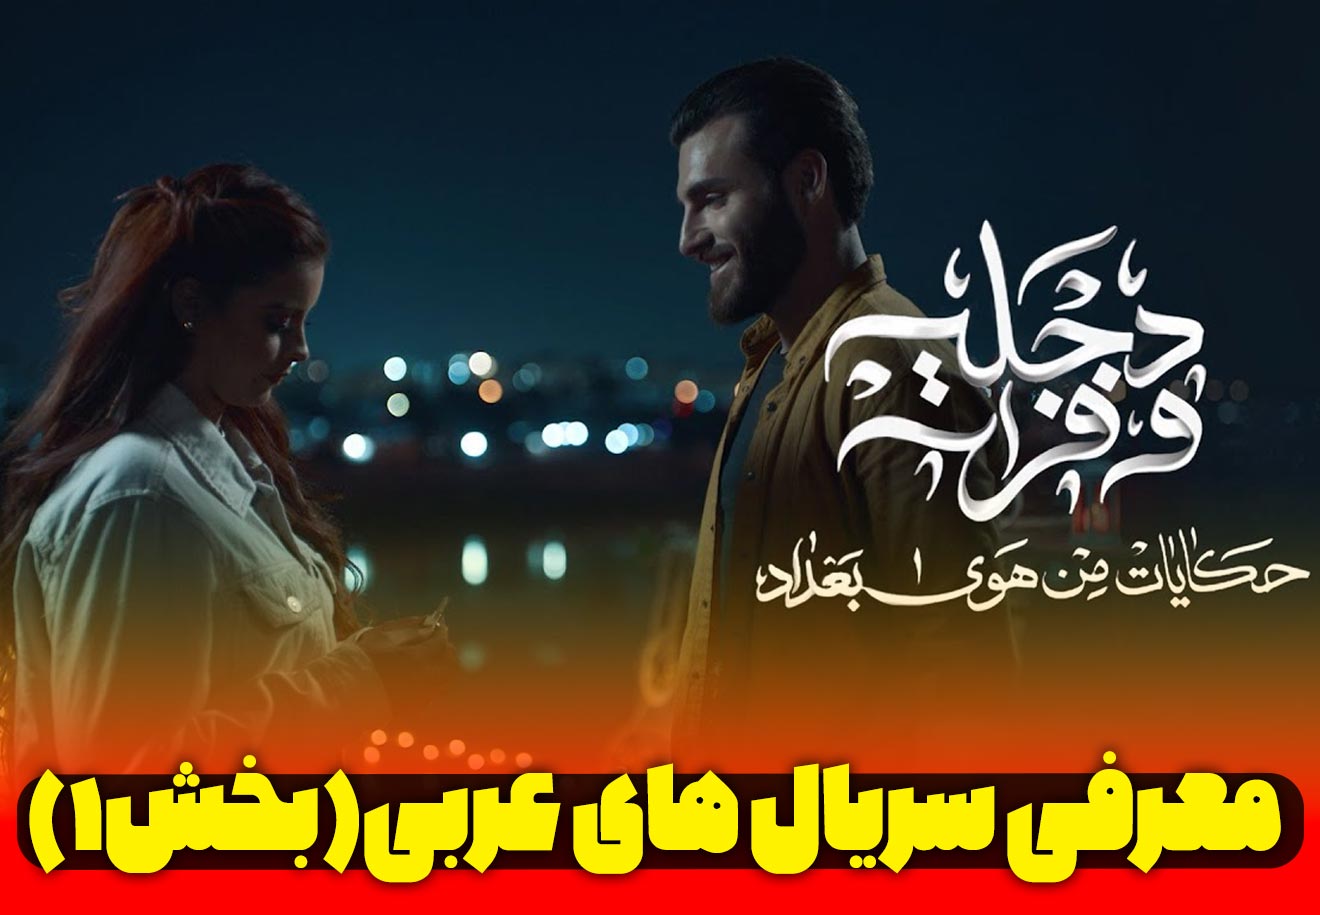 یادگیری عربی با فیلم